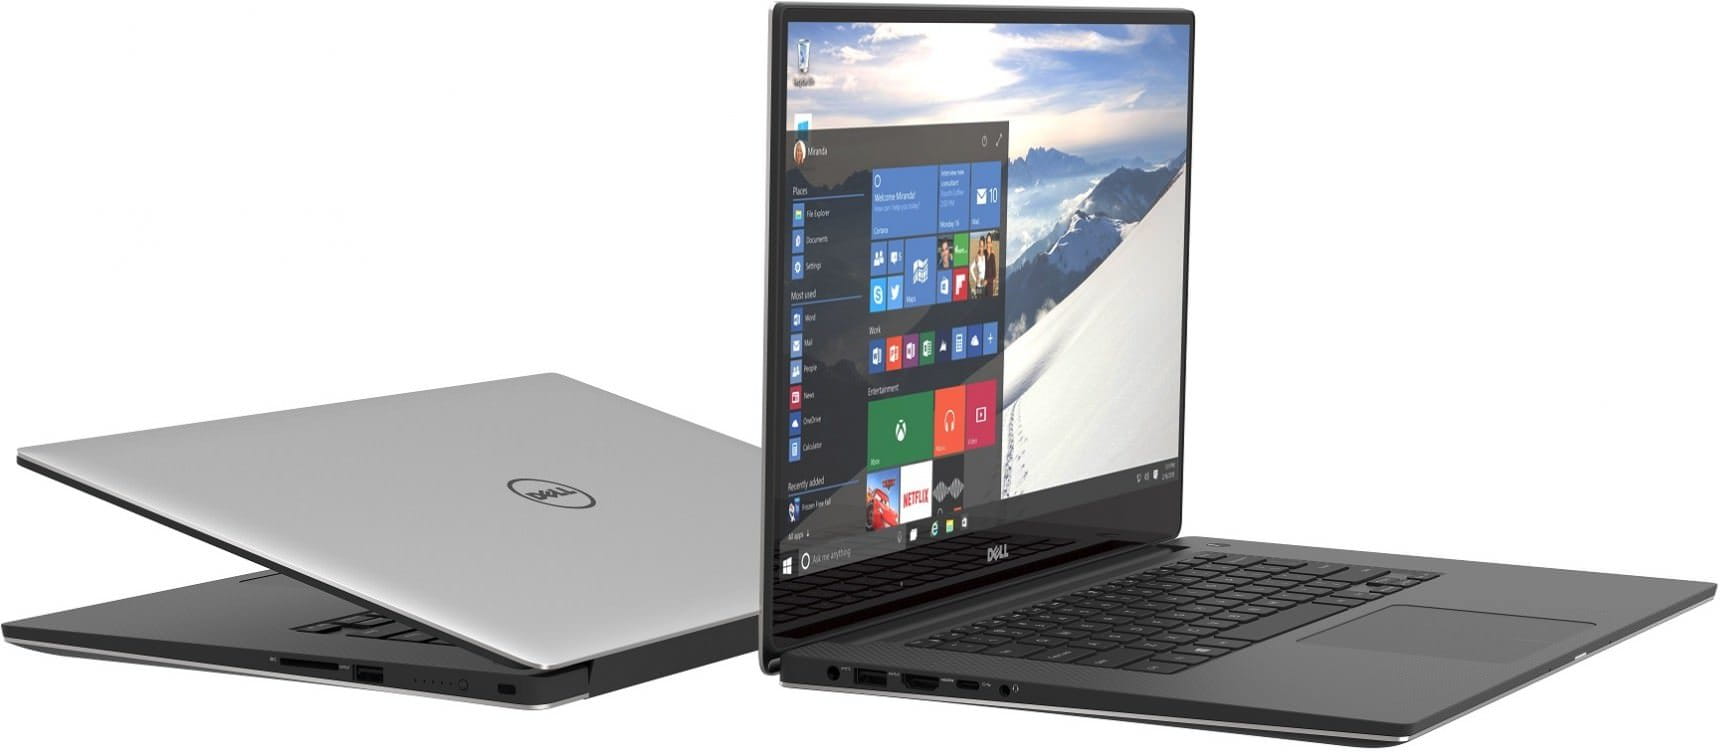 Laptop DELL XPS 15 Carbon 9560 / 15.6" Ultra HD / i7-7700HQ / 16GB DDR4 / 512GB SSD / NVIDIA GTX1050 4GB DDR5 / Windows 10 /